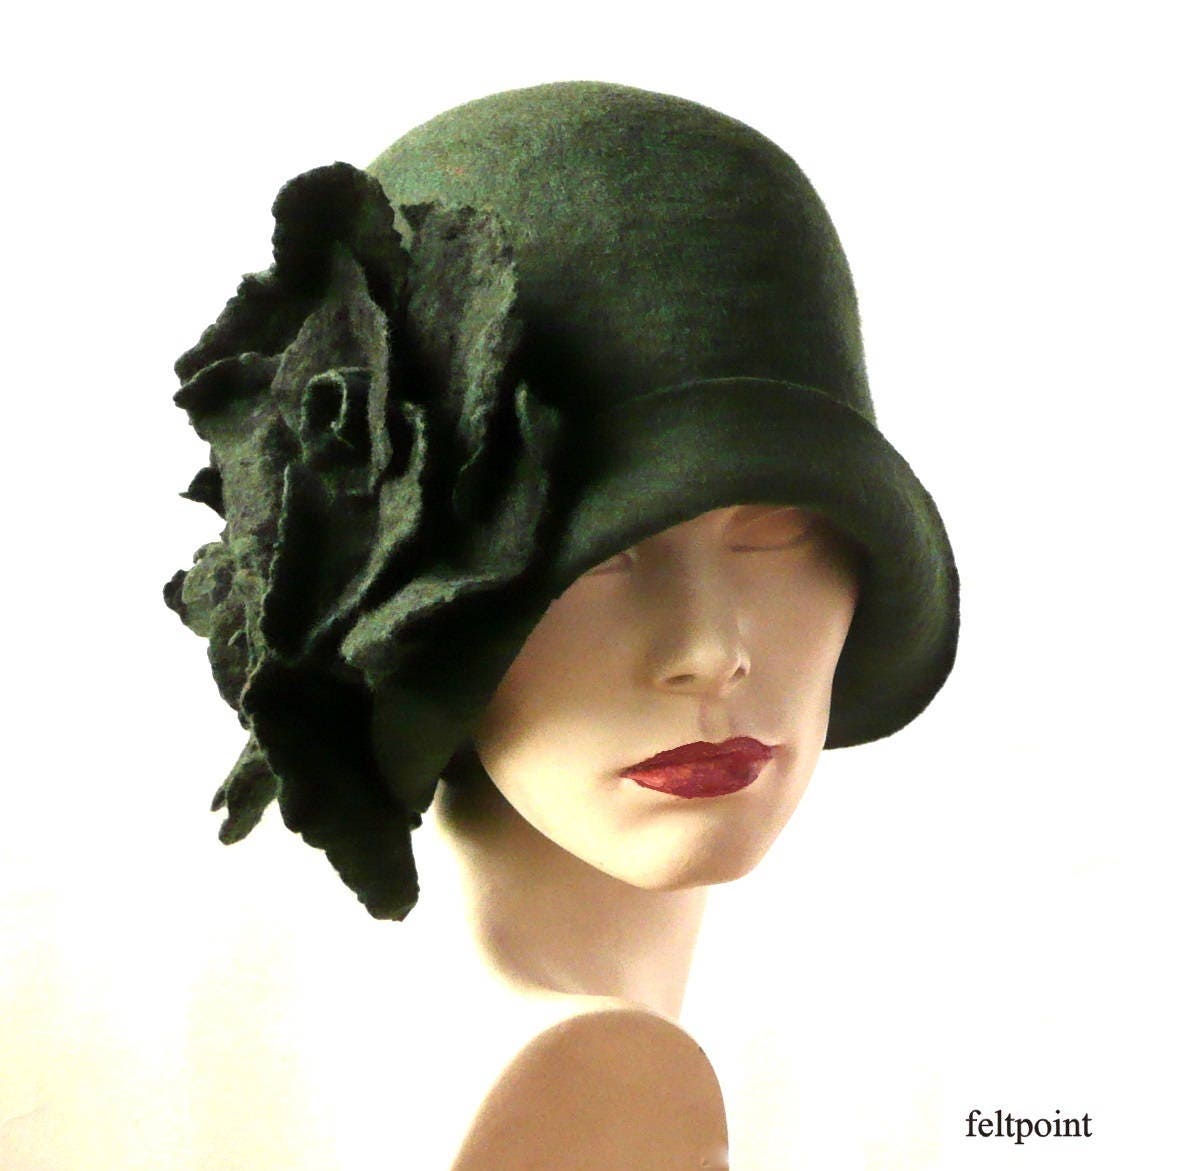 Louise Green Hat Vintage Felt Black FANCY Flowers Women's Ladies